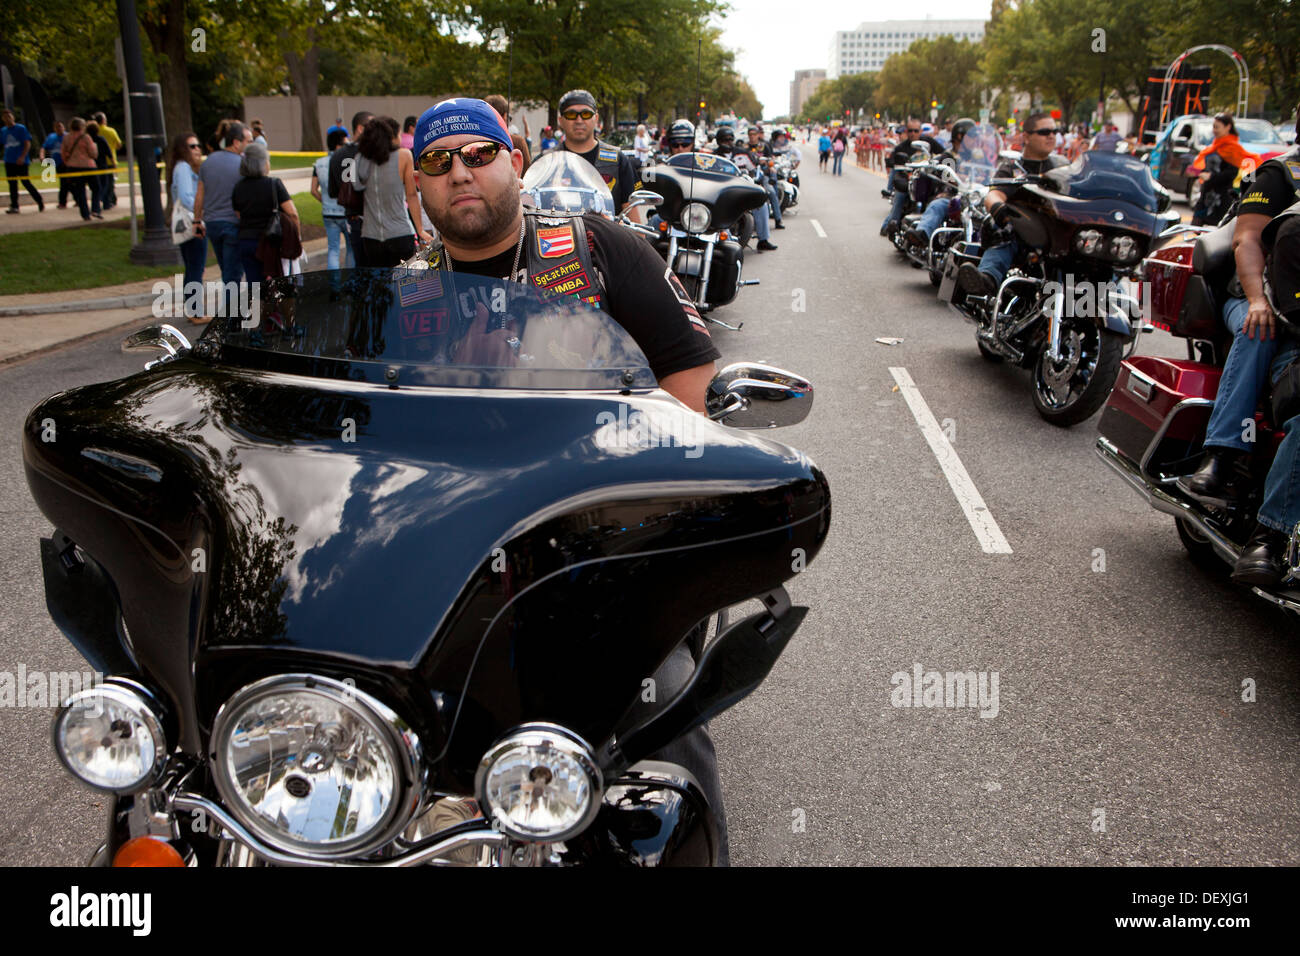 Harley Davidson Riders Stockfotos Und Bilder Kaufen Alamy